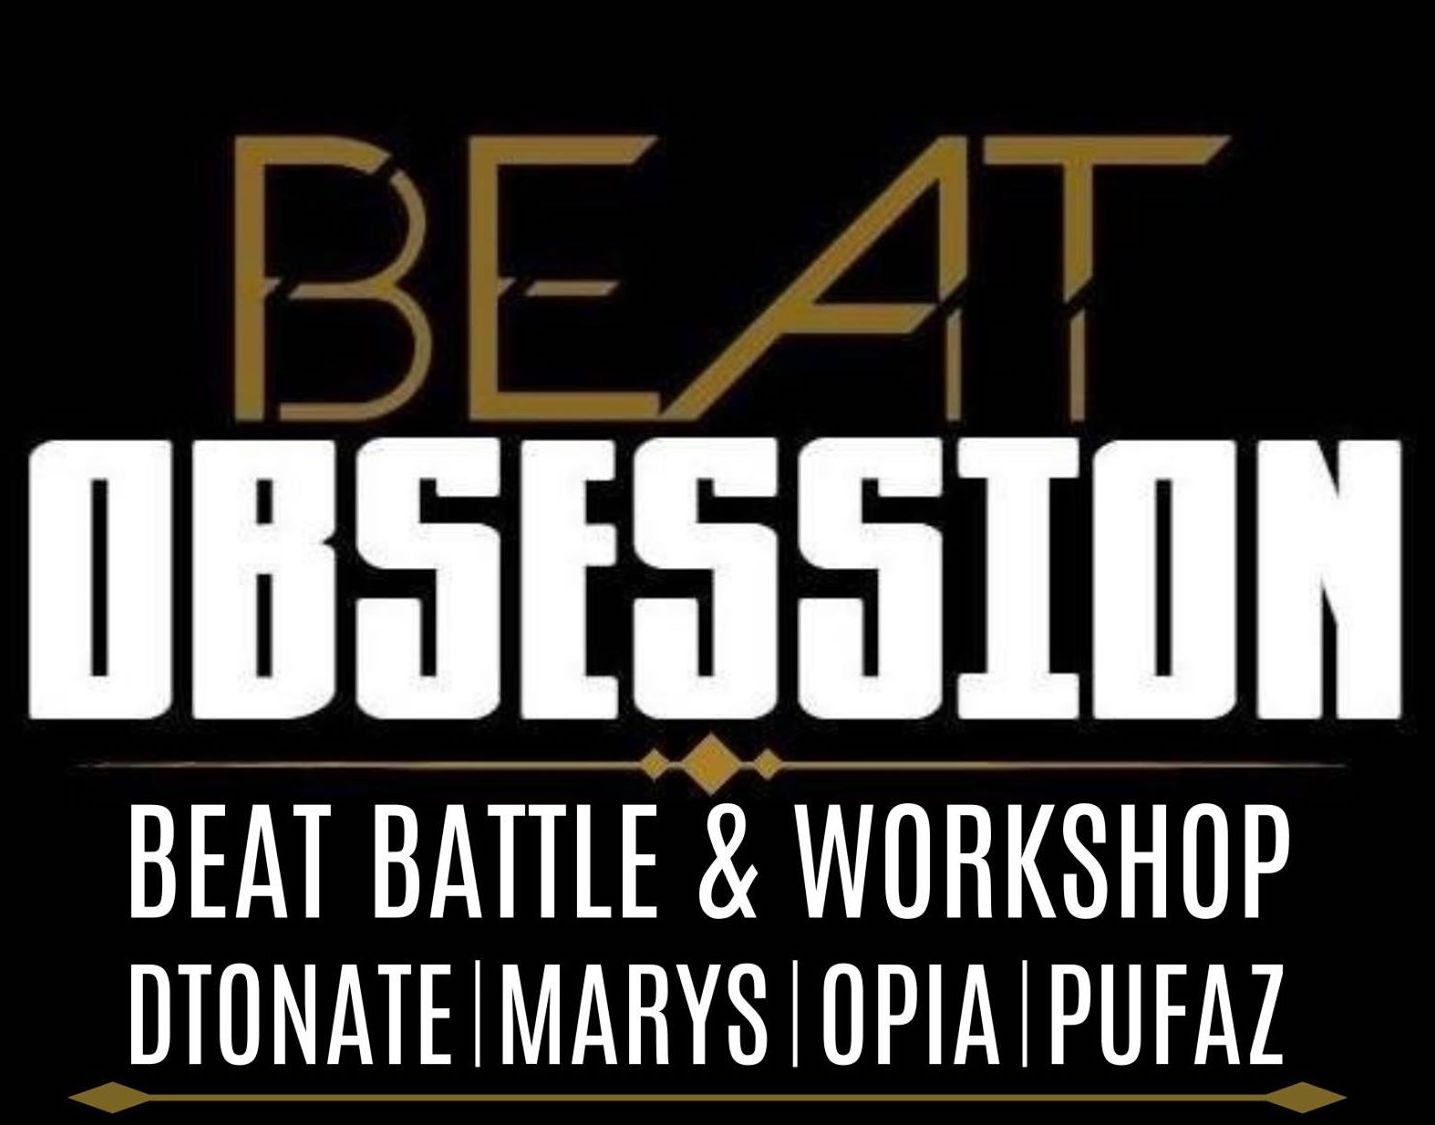 Beat Makers pozor! 3.3 se uskuteční v Praze workshop a beat battle. Vítěz postupuje do Německa. Beat Obsession!